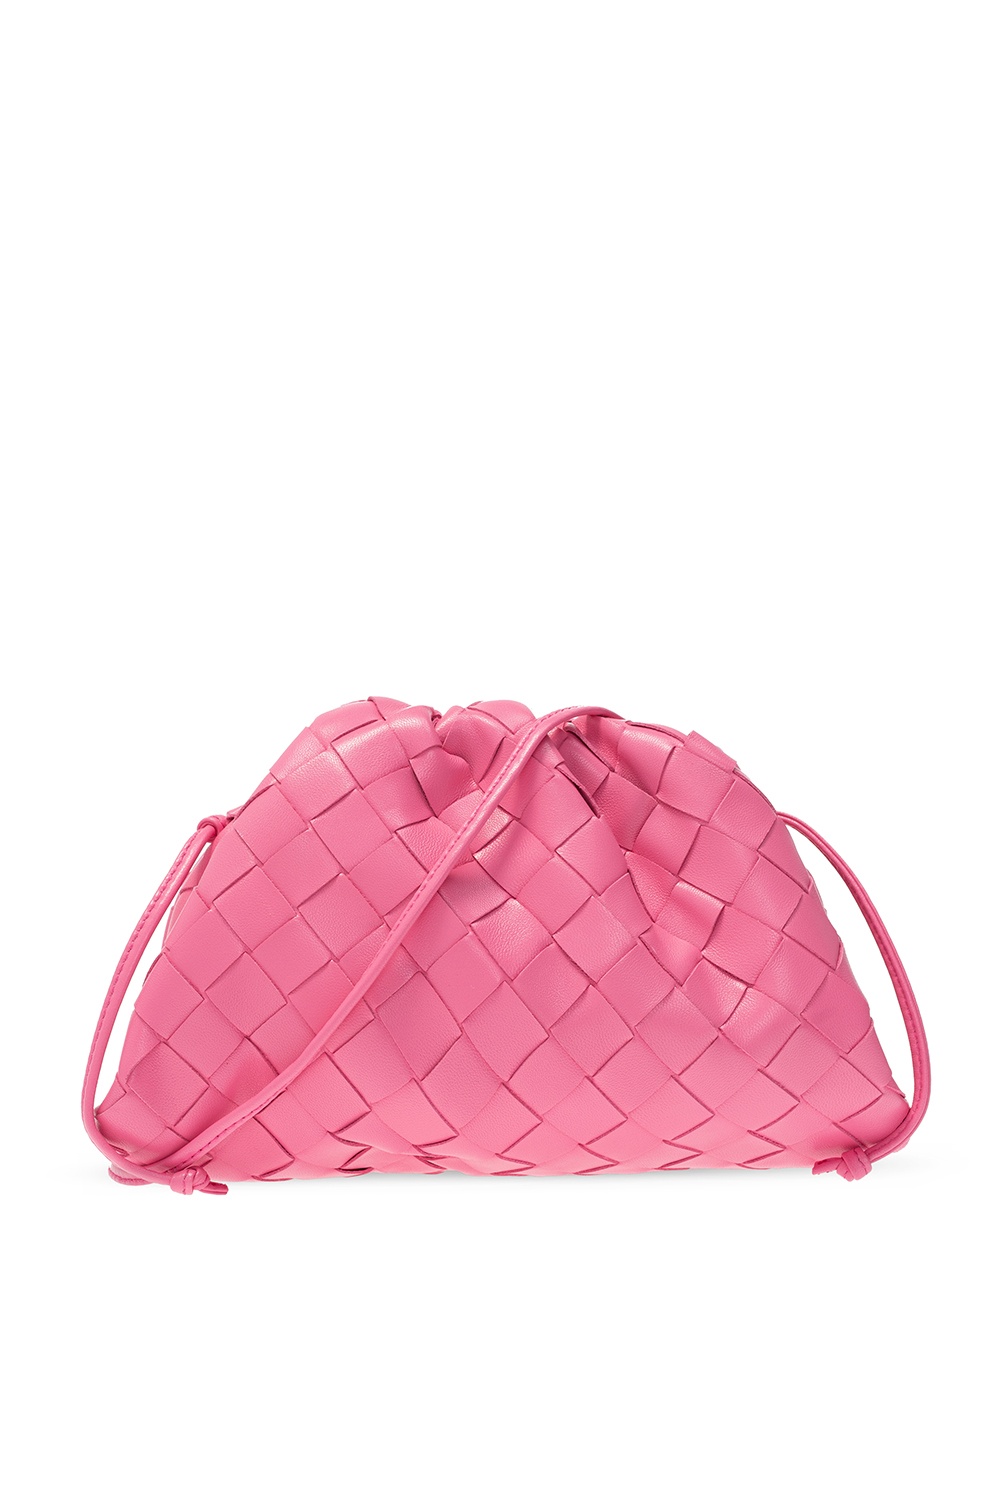 The Mini Pouch' shoulder bag Bottega Veneta - Vitkac Australia